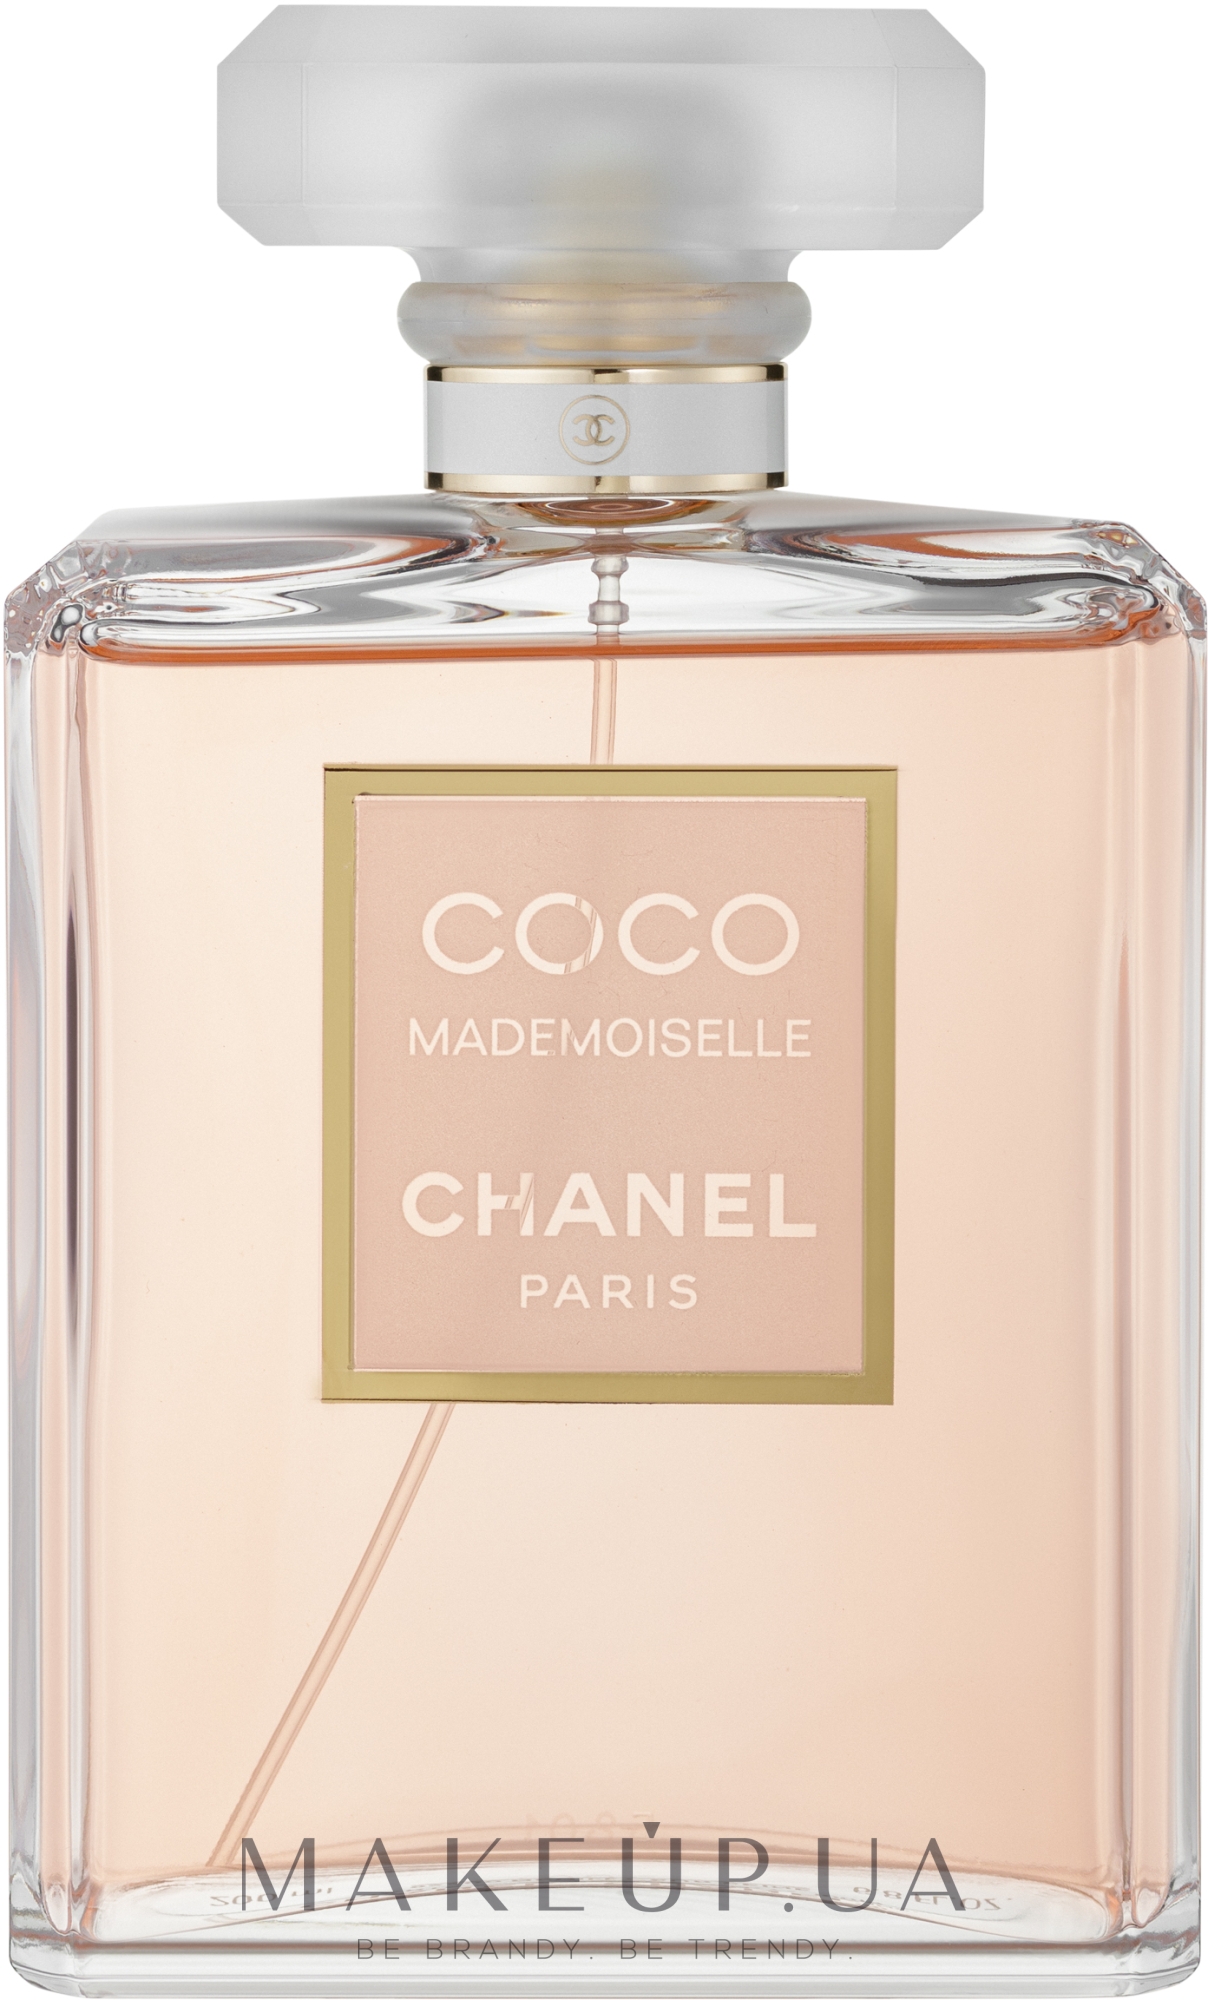 Купить Chanel Coco Mademoiselle Intense парфюмированная вода 50 мл в  интернетмагазине парфюмерии parfumkhua  Цены  Описание